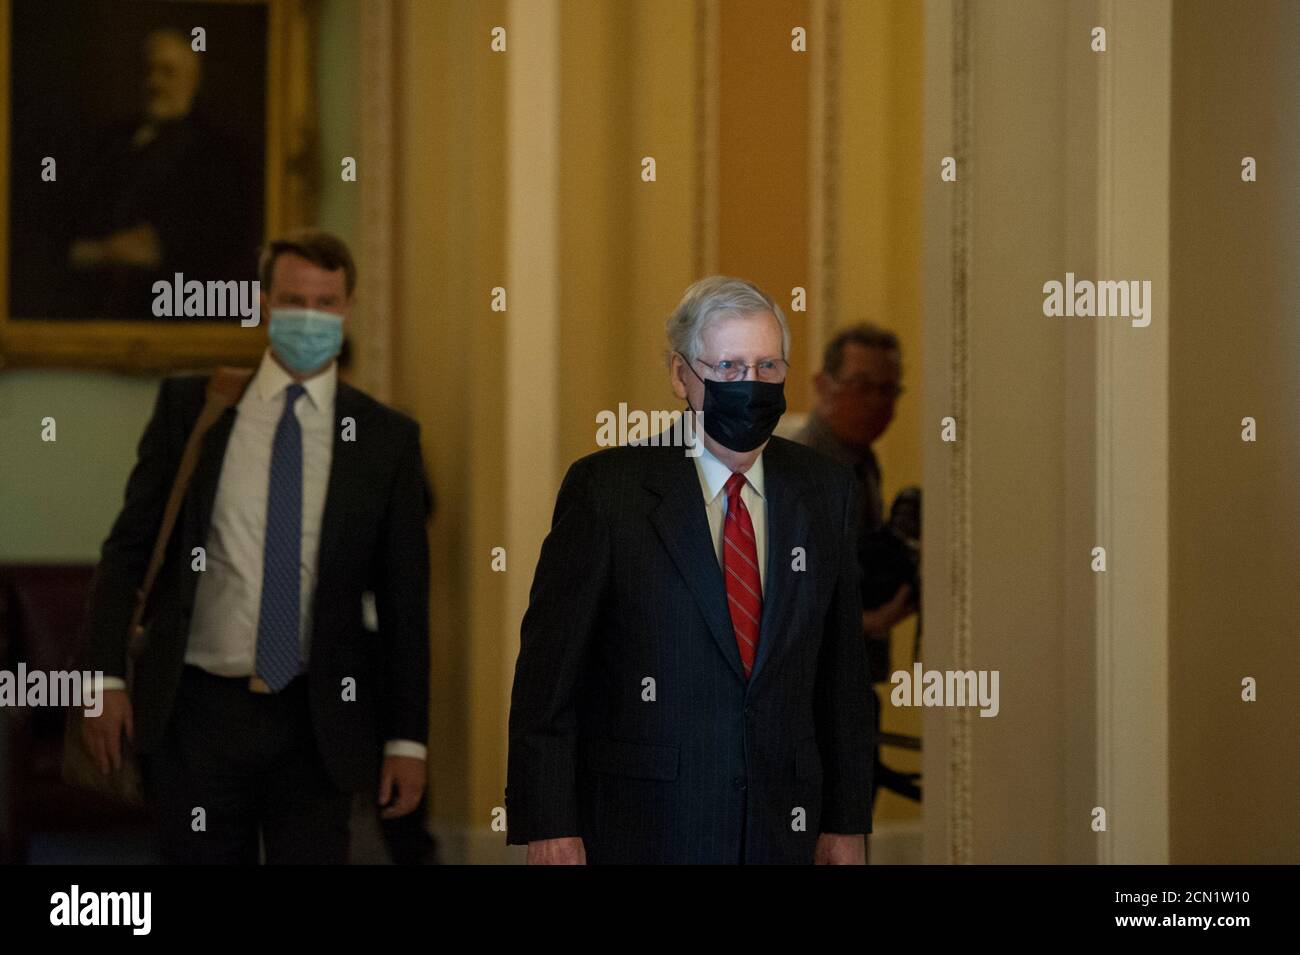 Mitch McConnell (républicain du Kentucky), chef de la majorité au Sénat américain, se rend à son bureau alors qu'il arrive pour la journée au Capitole des États-Unis à Washington, DC., le jeudi 17 septembre 2020. Crédit : Rod Lamkey/CNP/MediaPunch Banque D'Images